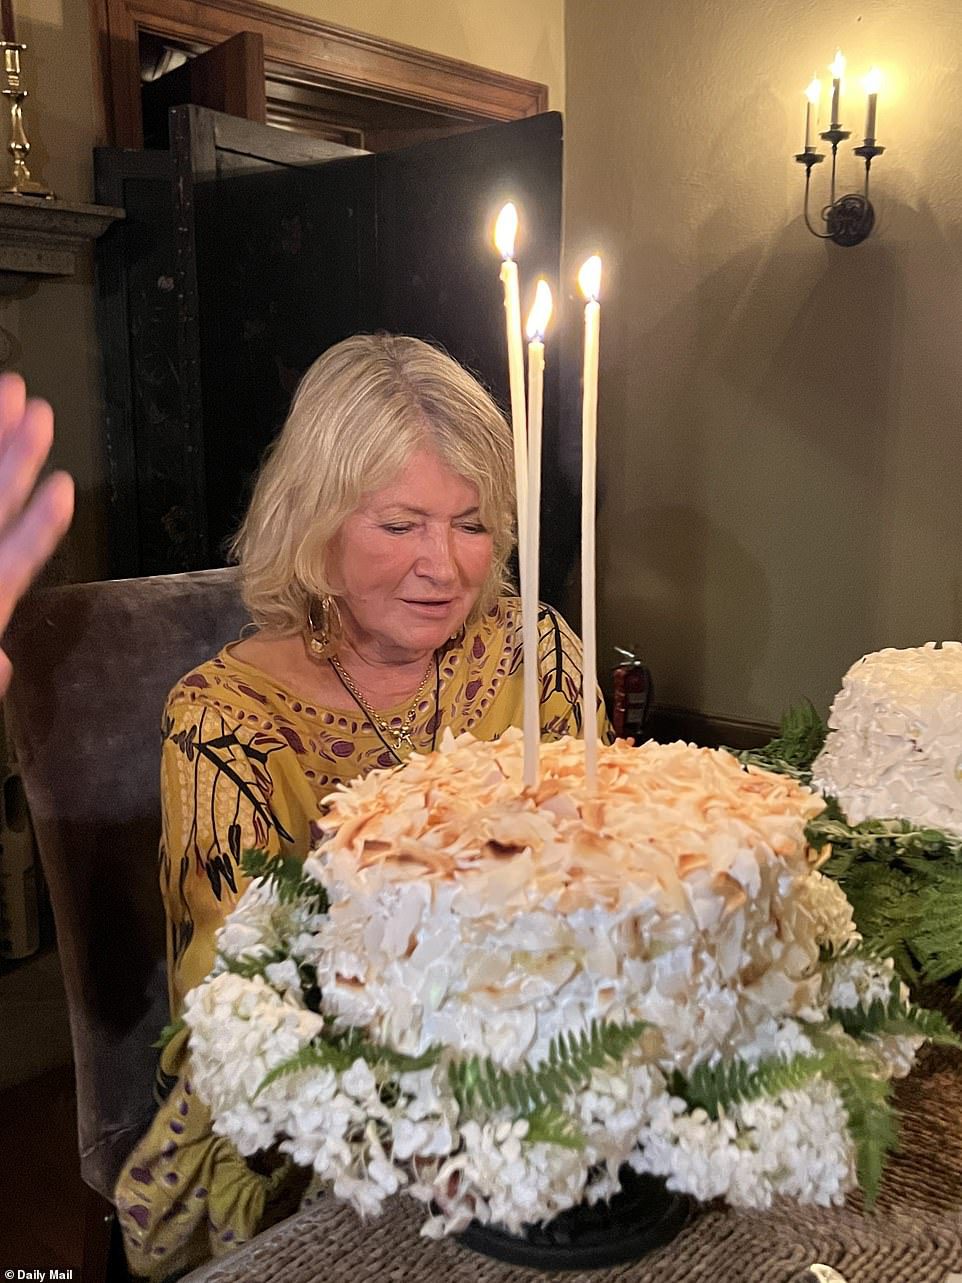 Tak pyszne: jej pyszne ciasto pojawiło się na trzech białych świecach